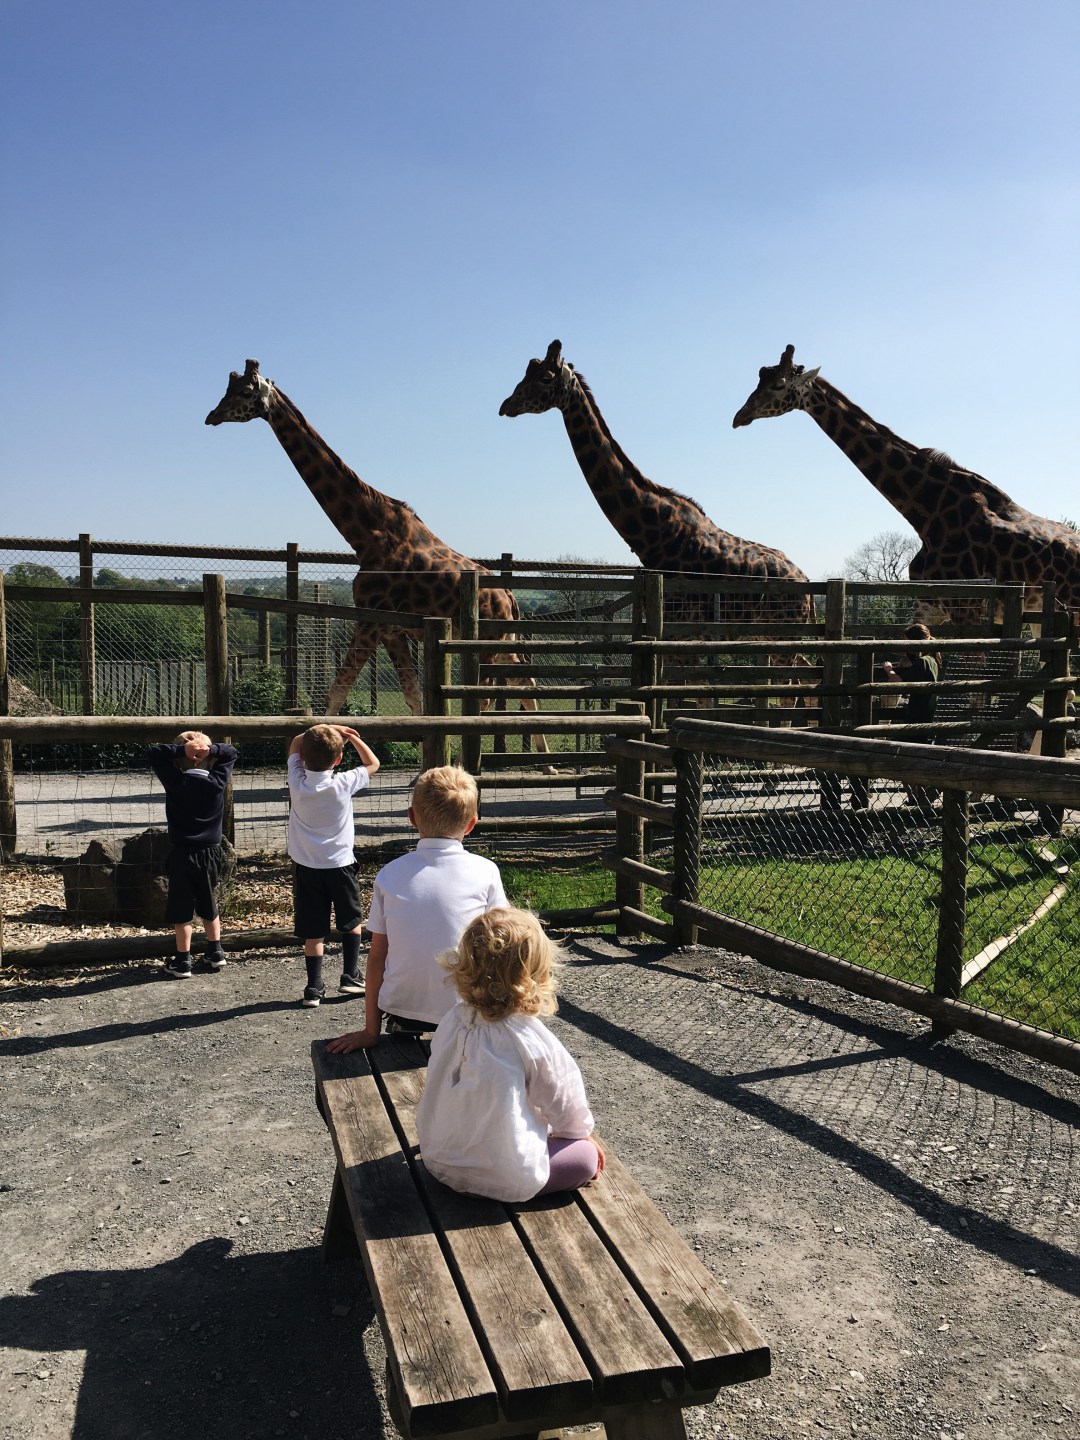 Children watching giraffes at Folly Farm